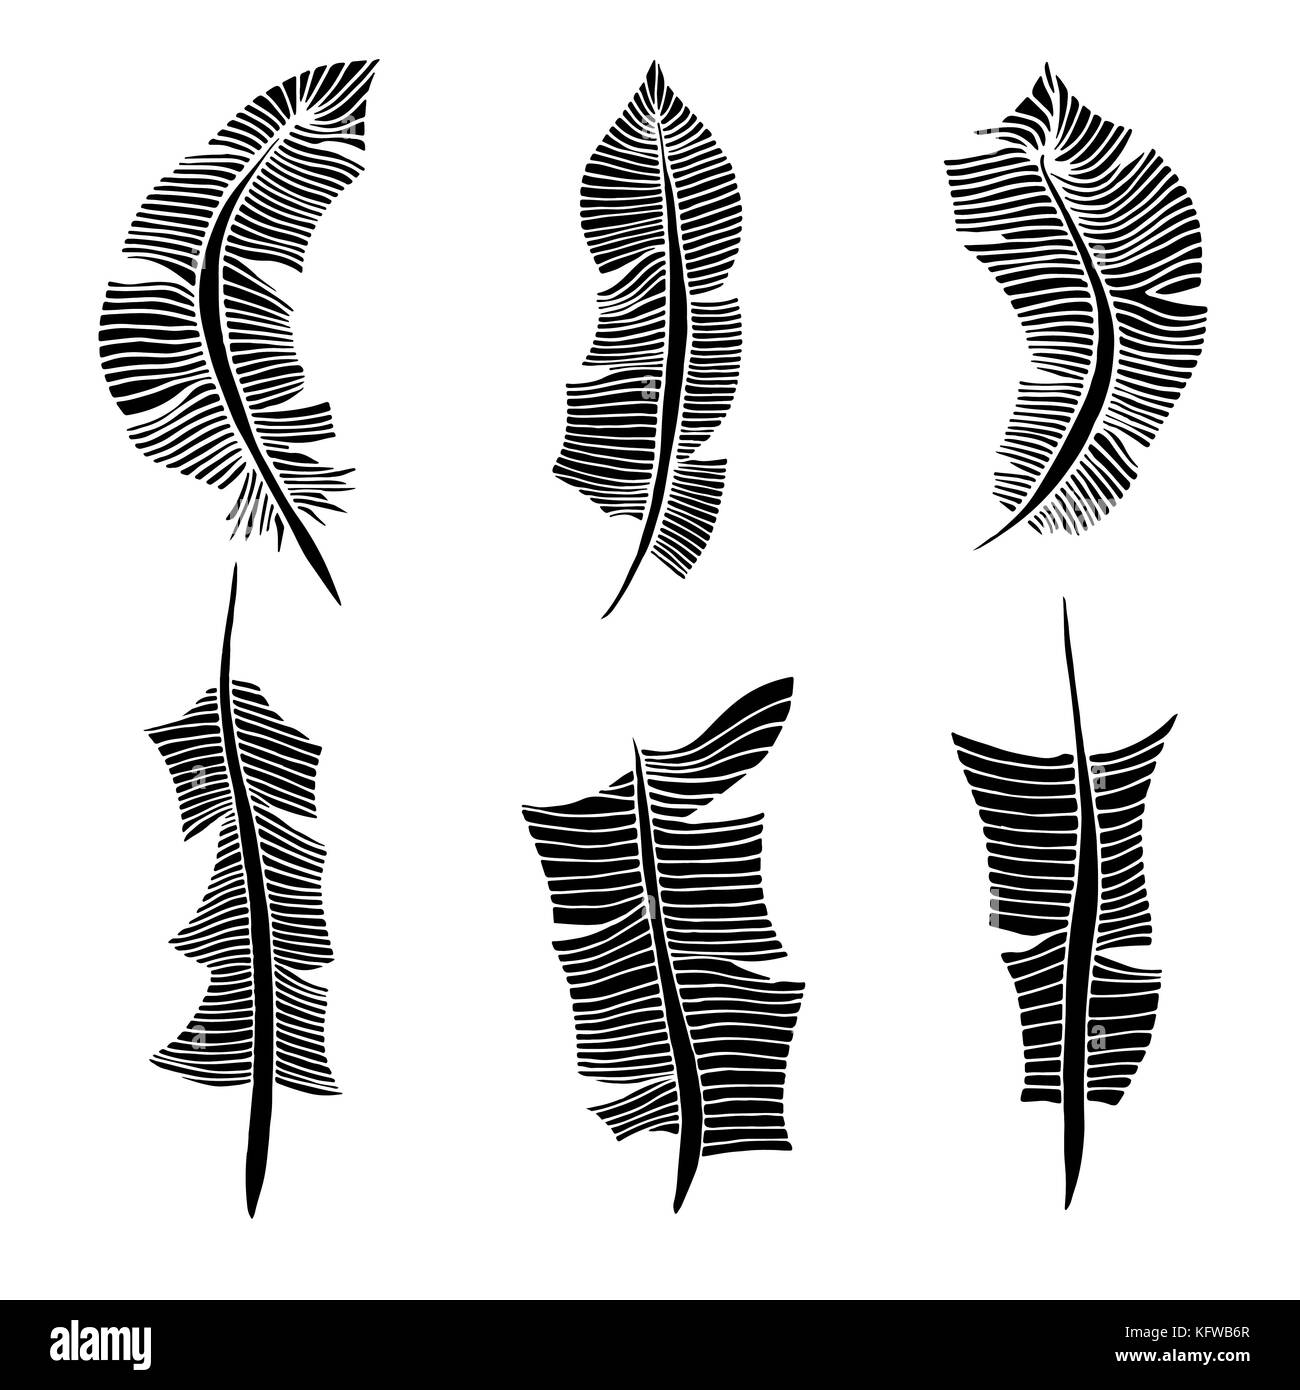 Jeu de plumes. vector illustration. isolated on white Illustration de Vecteur